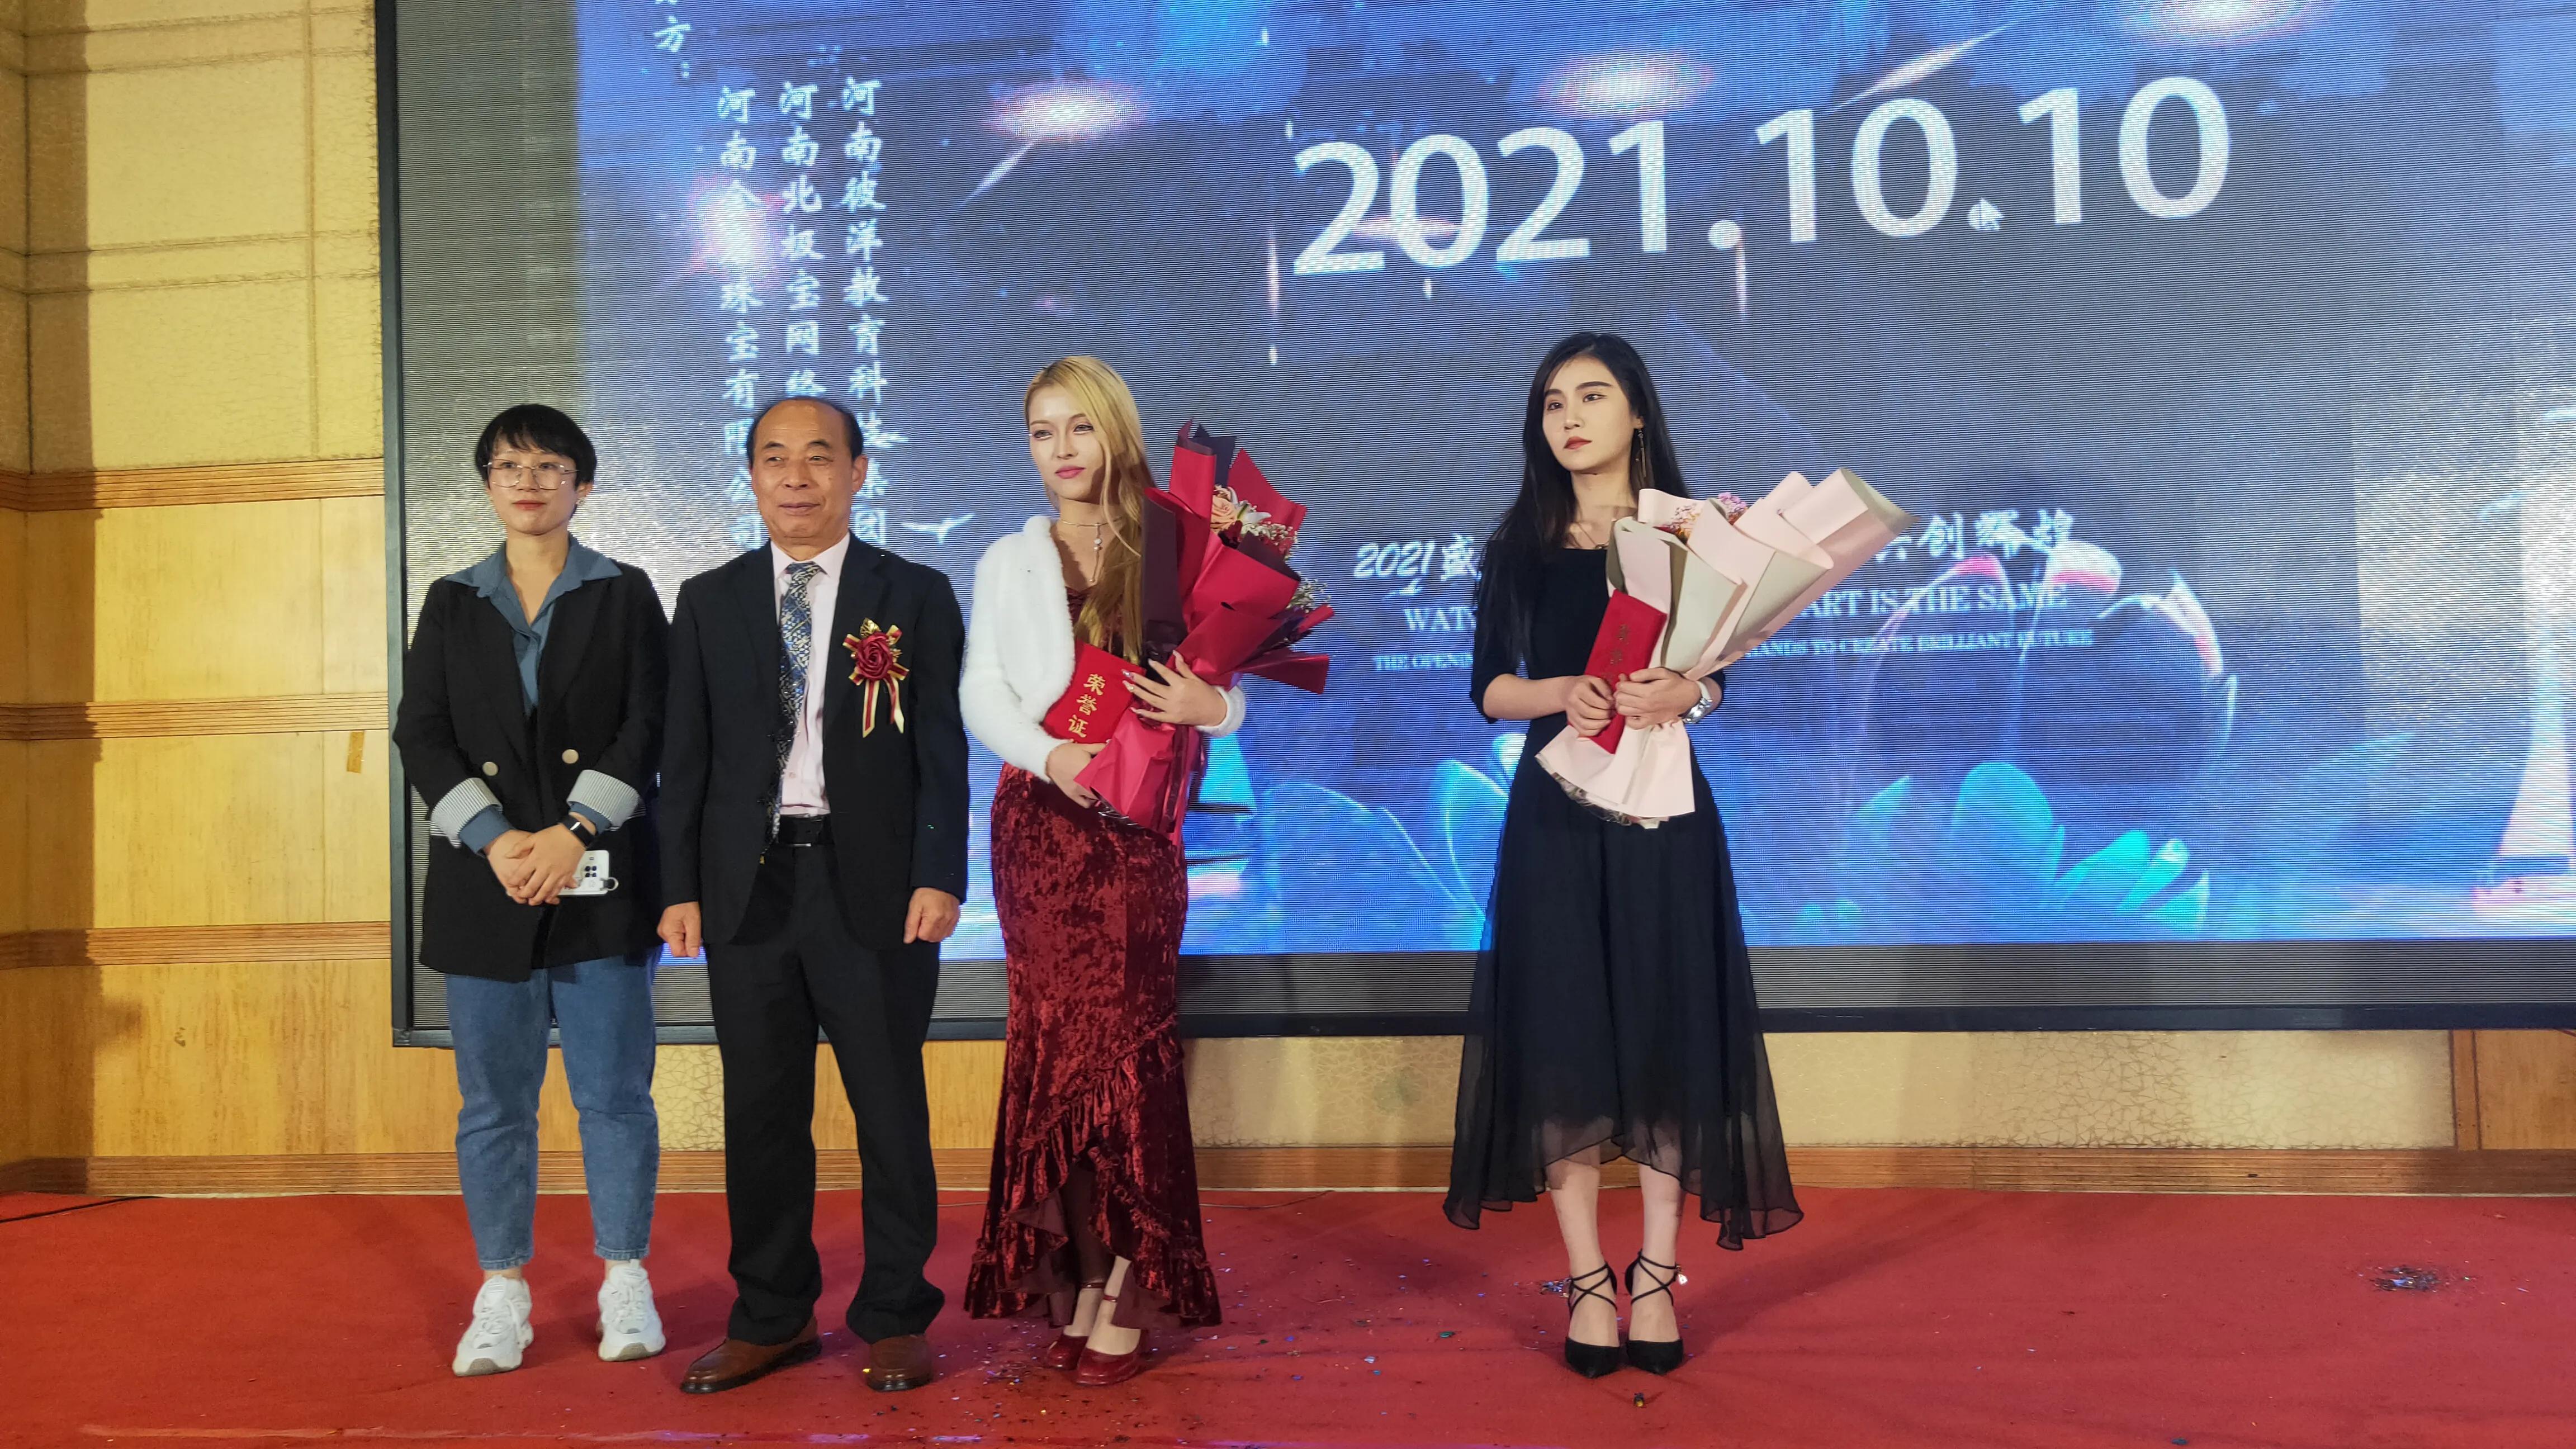 光疗面膜形象大使选拔赛启动仪式在郑州举行